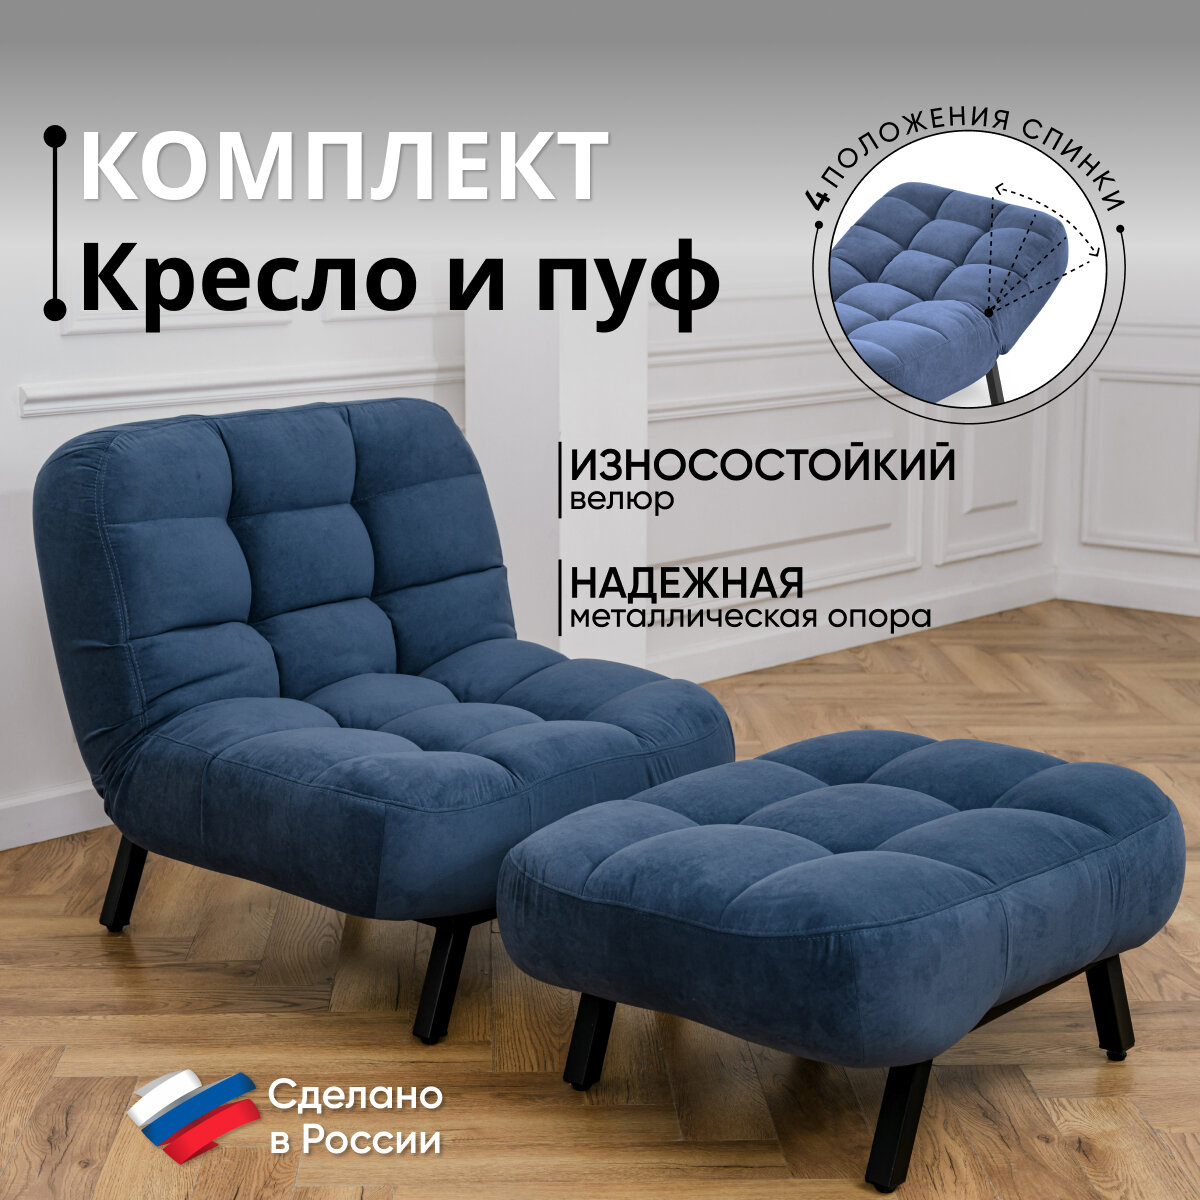 Комплект мягкой мебели Кресло и Пуф Brendoss 300 цвет синий